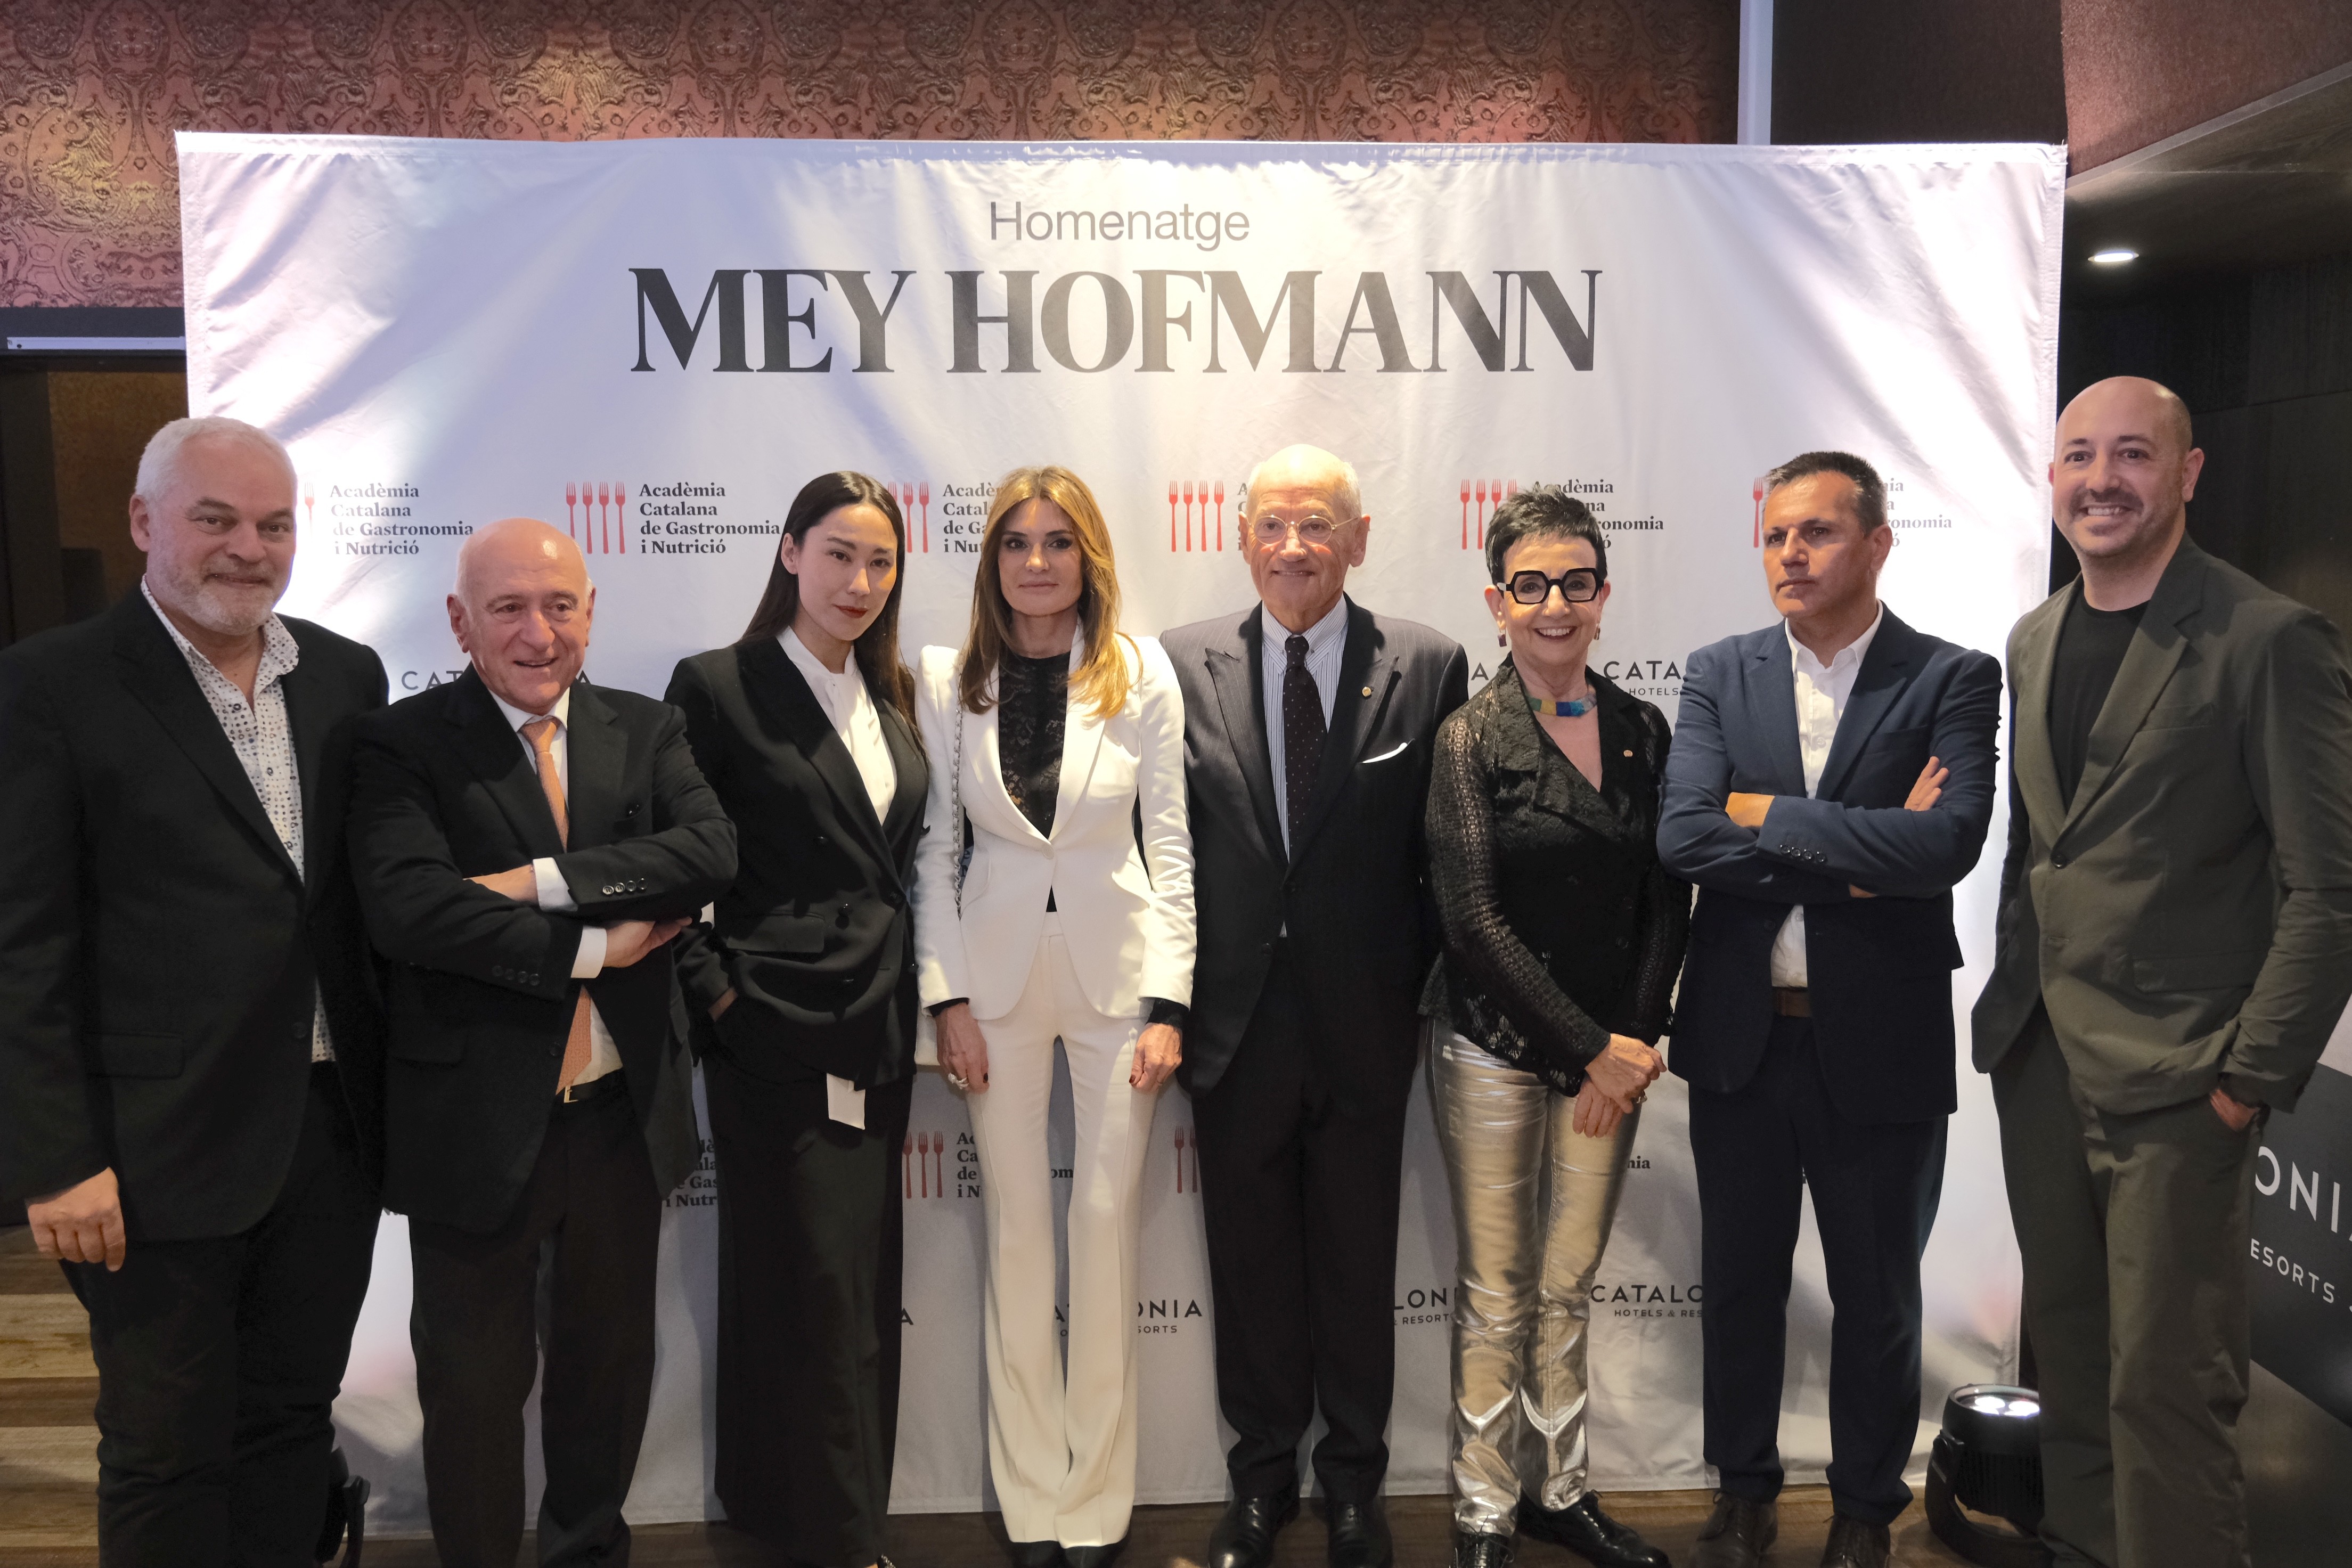 L’Acadèmia Catalana de Gastronomia i Nutrició ret homenatge a Mey Hofmann